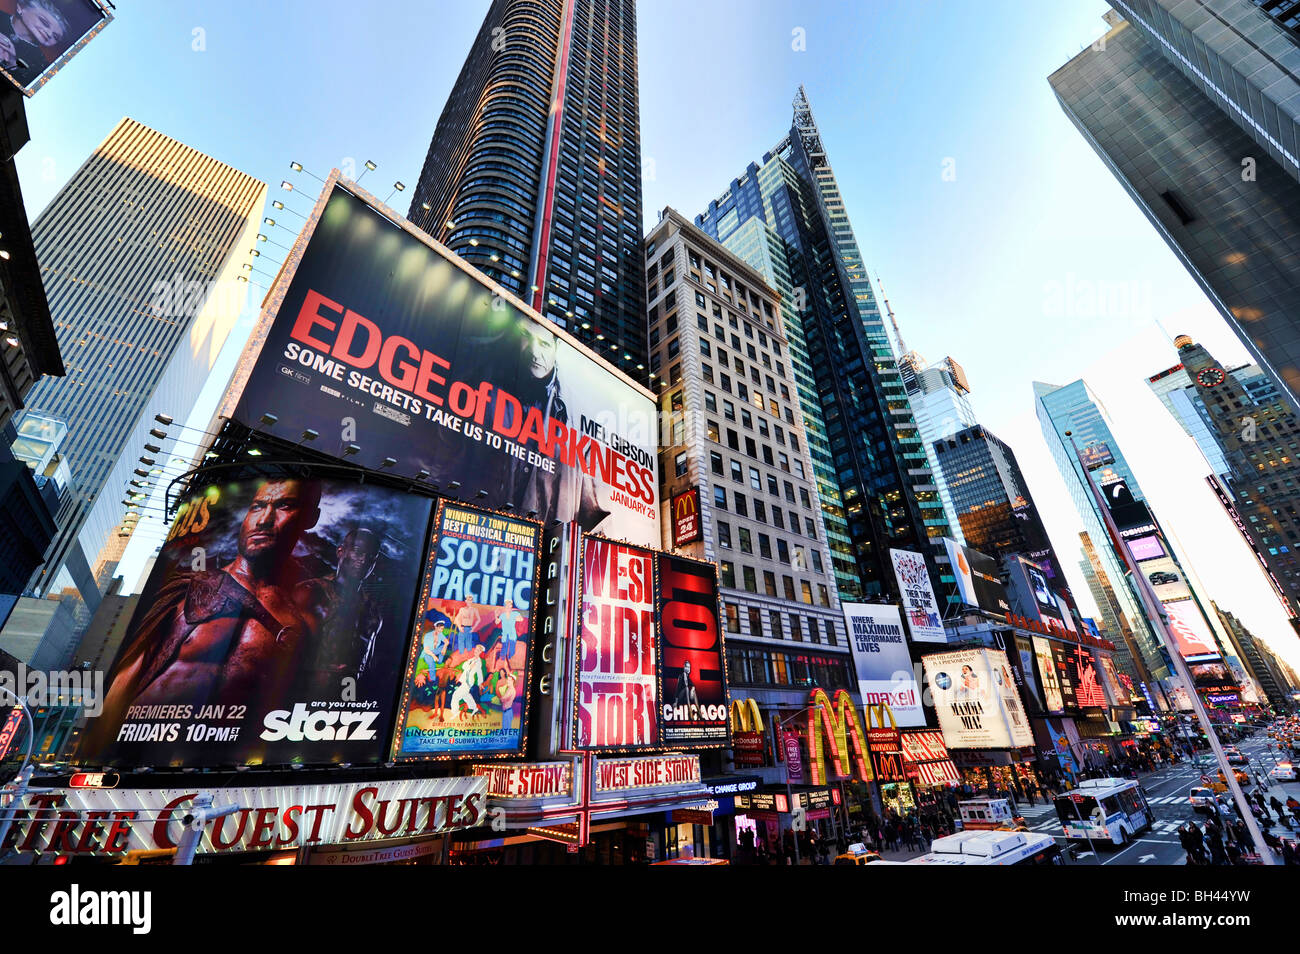 Teatro di cartelloni e insegne pubblicitarie su Broadway/7th Avenue, Times Square, Duffy Square, New York City, NY, STATI UNITI D'AMERICA Foto Stock